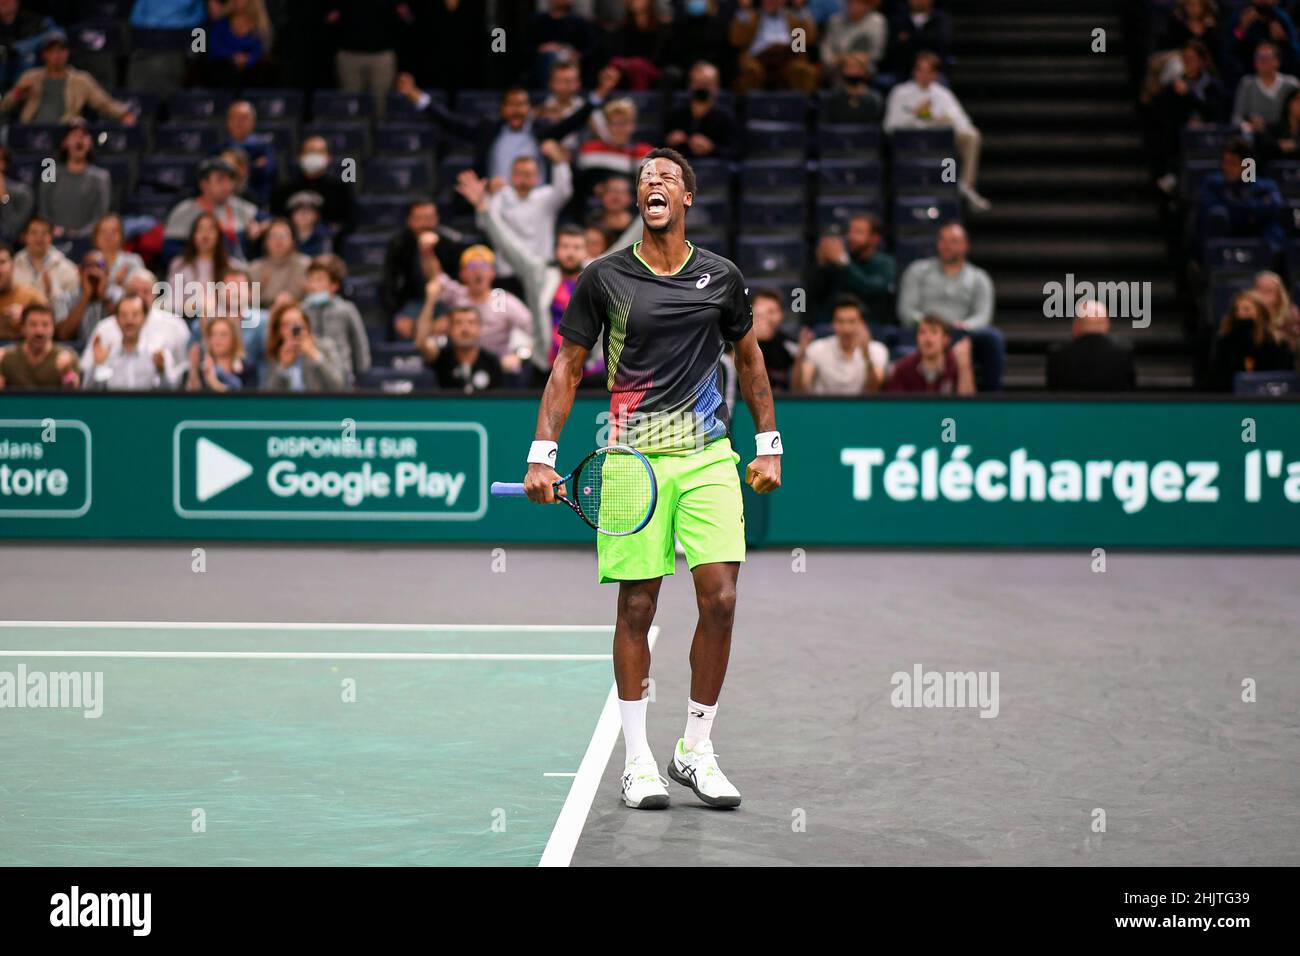 Gael Monfils de France lors du Rolex Paris Masters 2021, ATP Masters 1000 tennis Tournament, le 2 novembre 2021 au Accor Arena de Paris, France - Banque D'Images